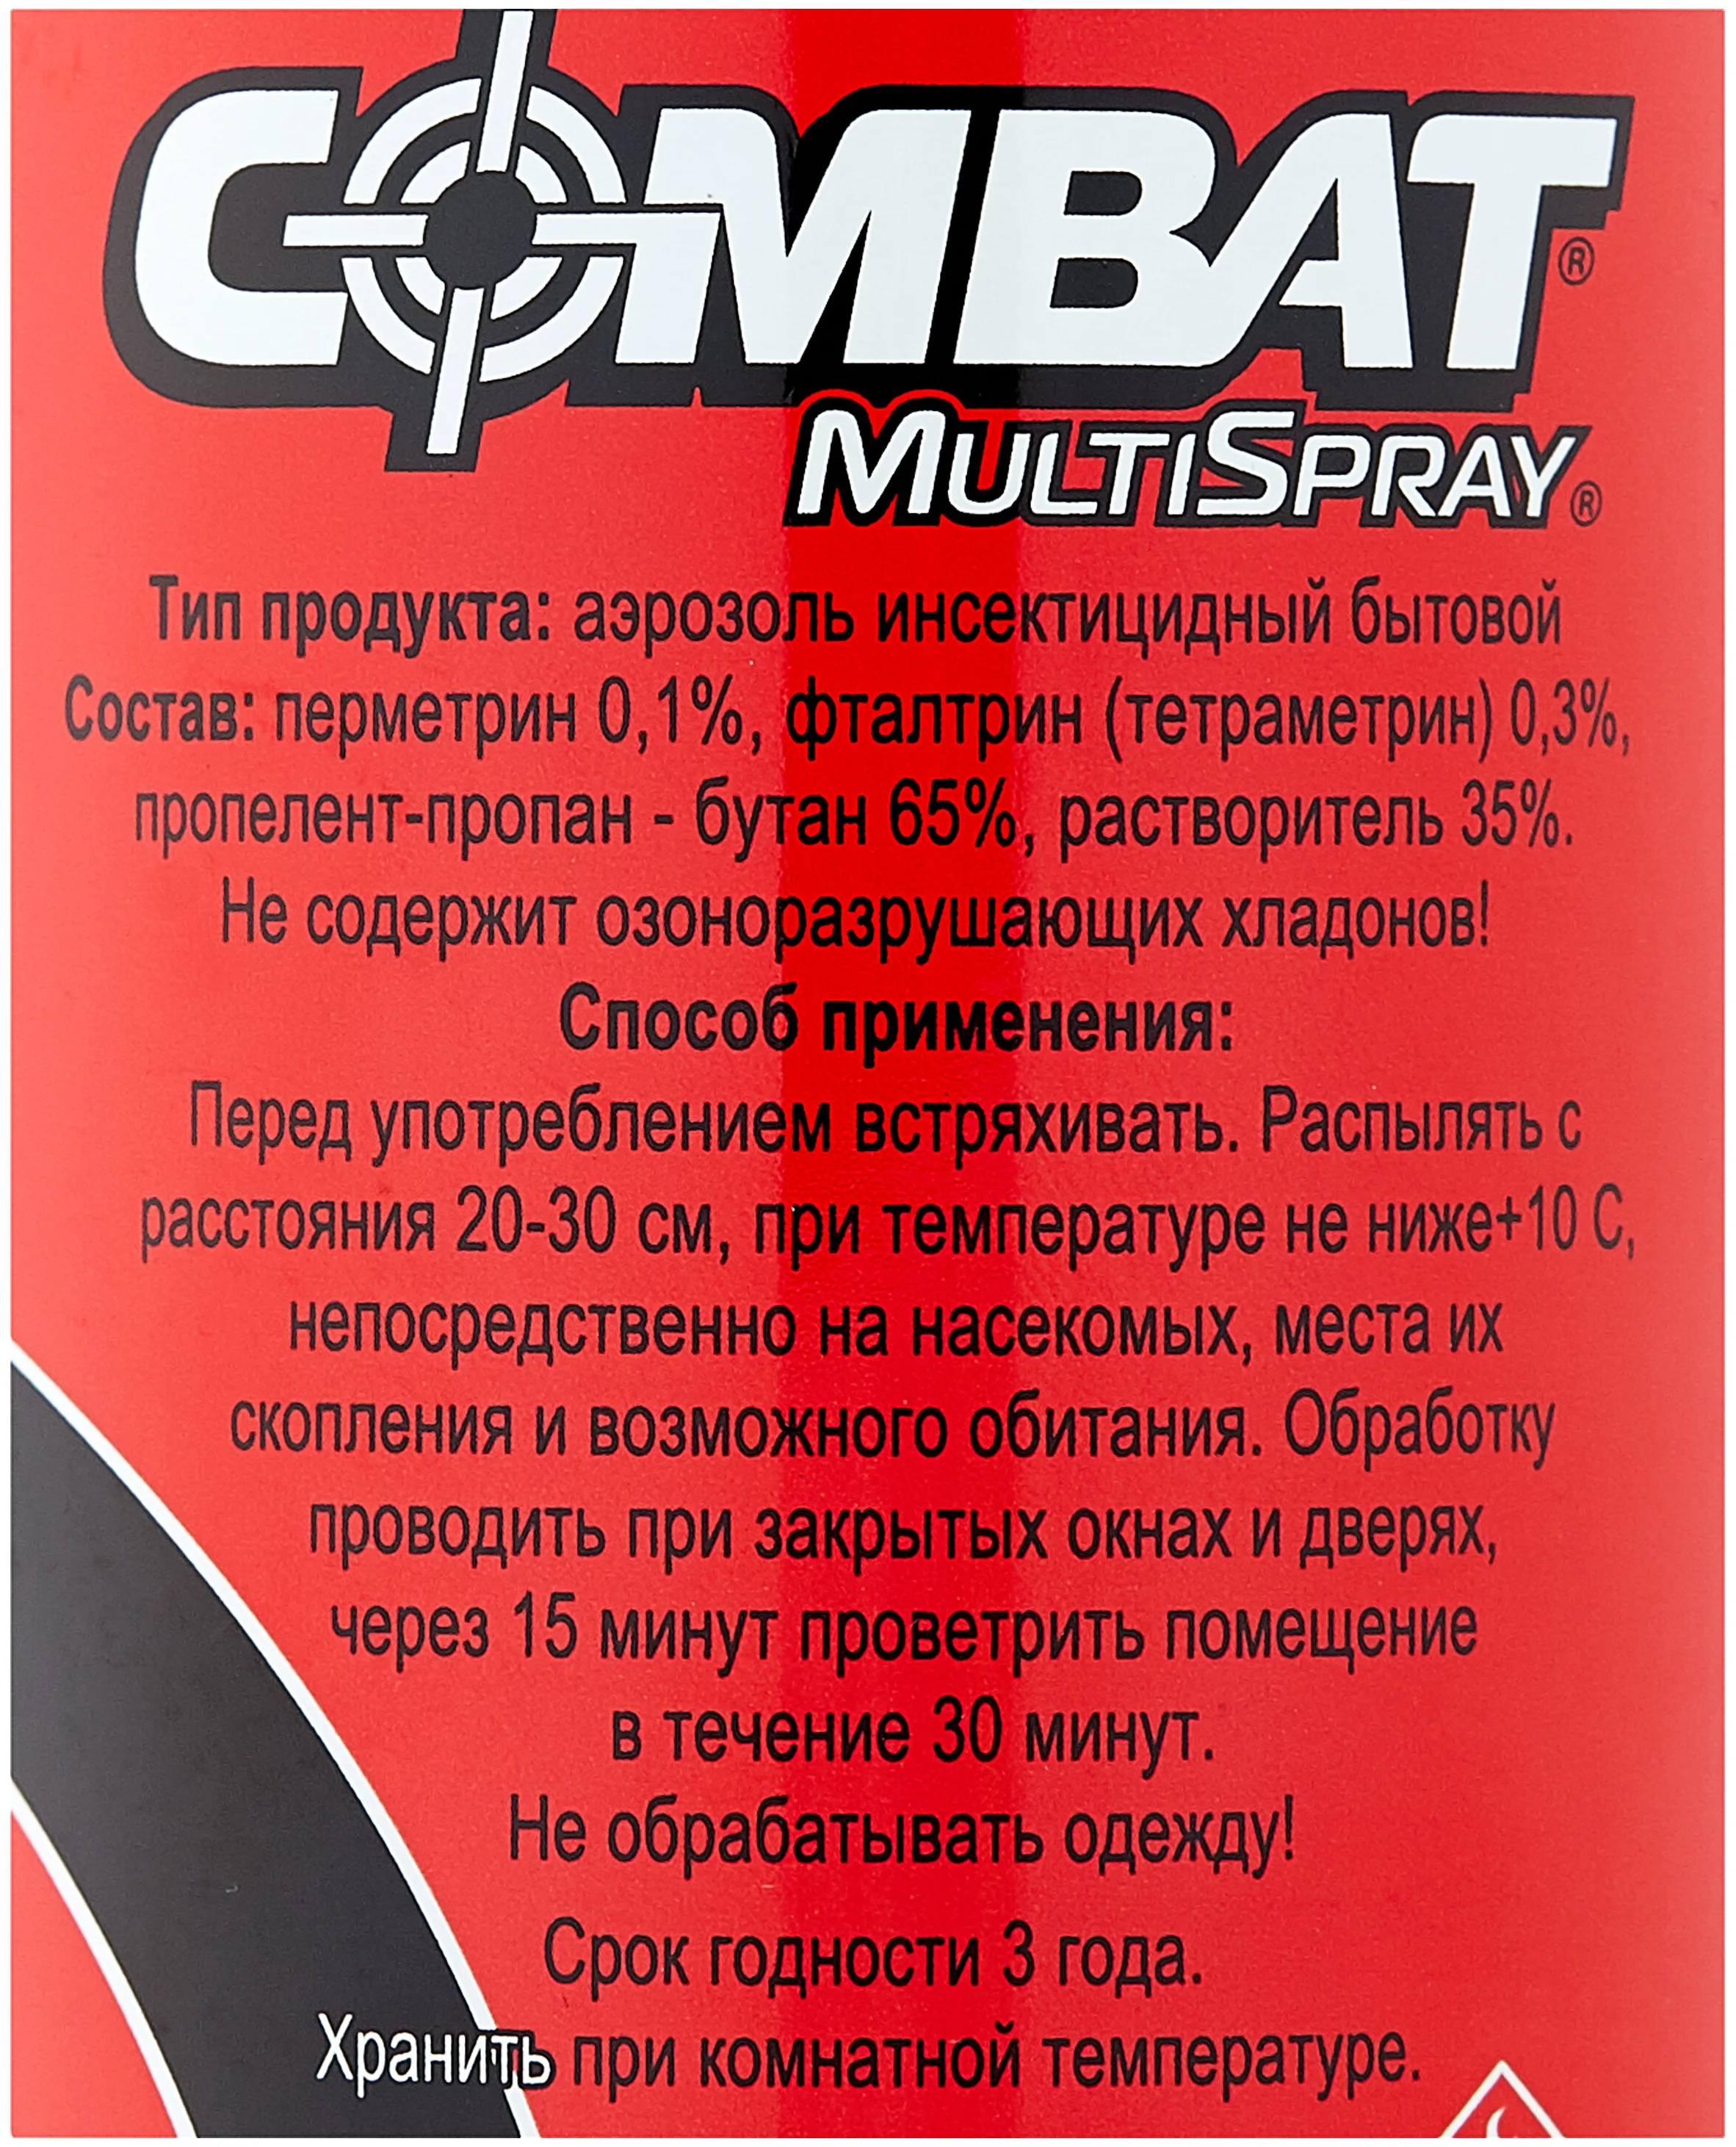 Combat "MultiSpray" - особенности: для использования в помещении